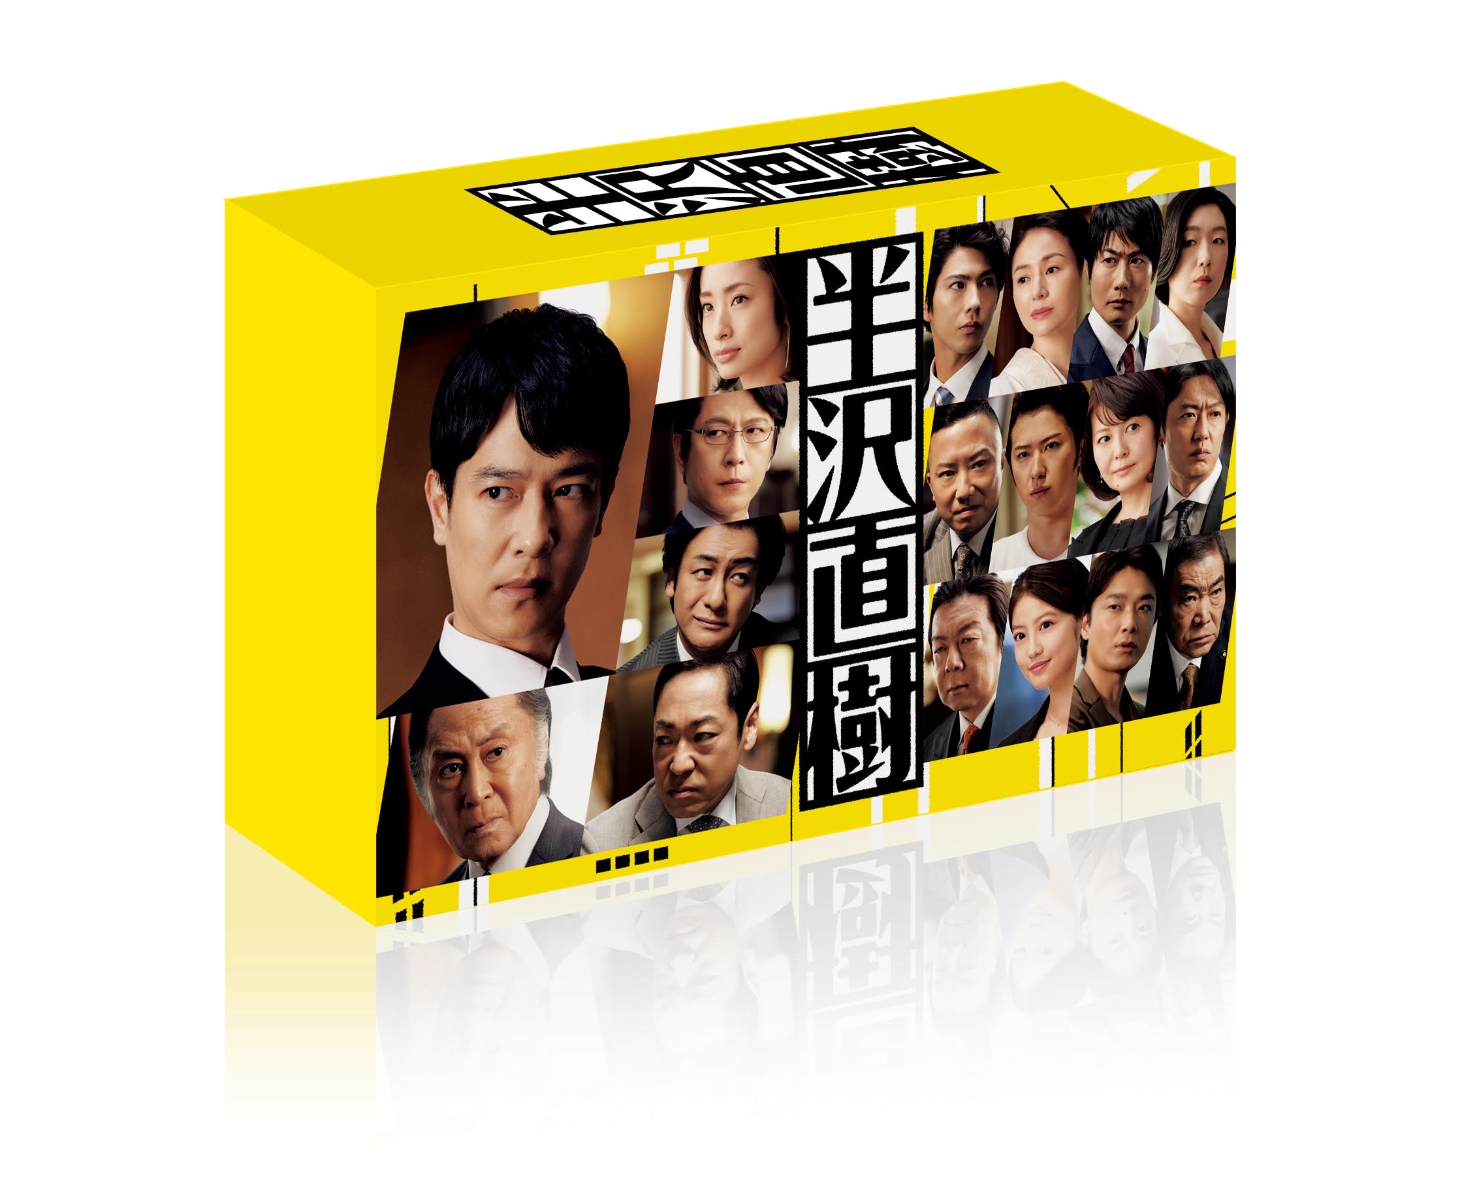 半沢直樹(2020年版) -ディレクターズカット版ー Blu-ray BOX【Blu-ray】画像